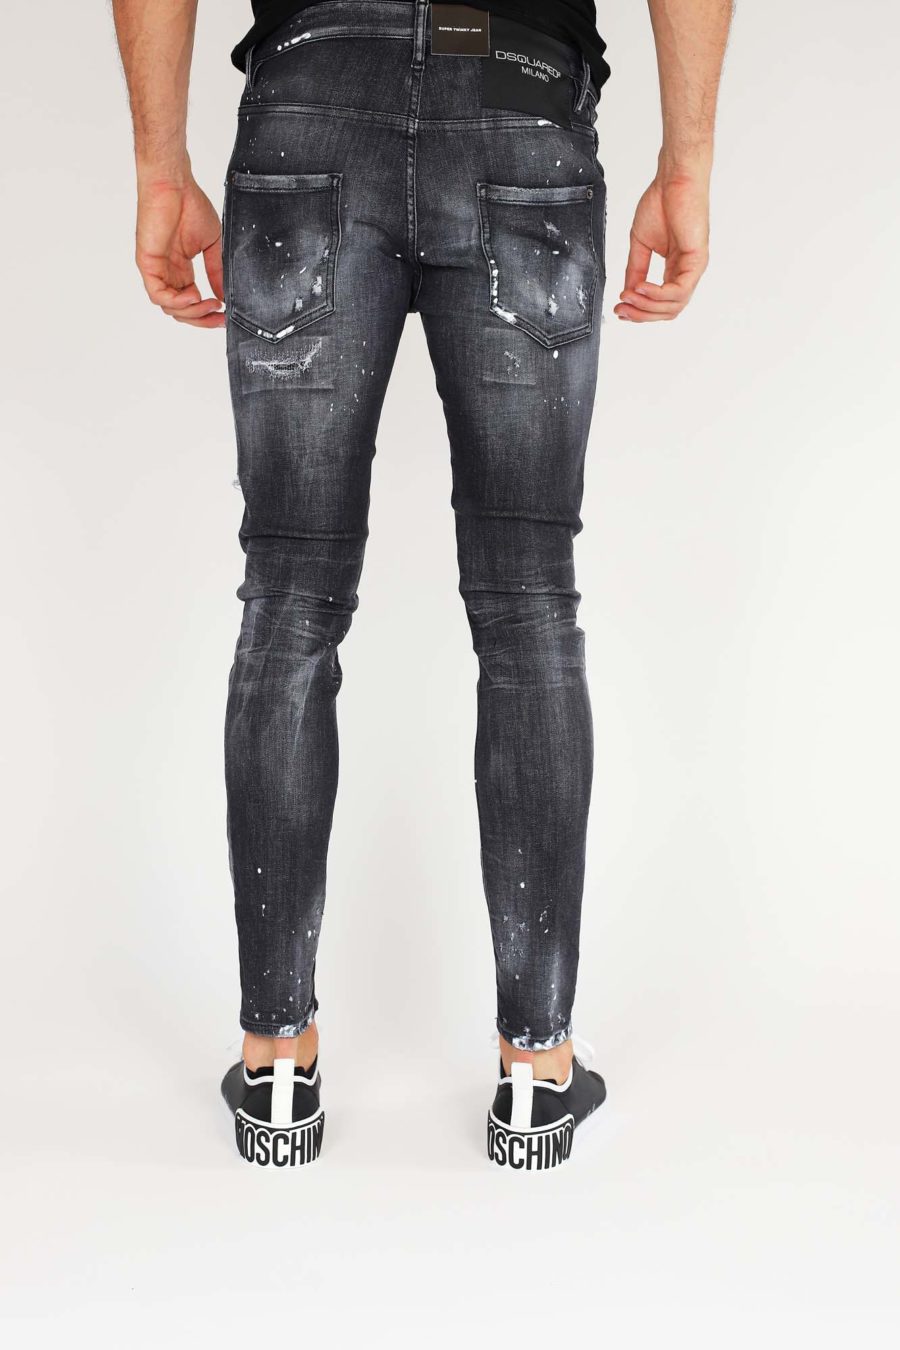 Jeans "Super Twinky Jean" con cremallera - IMG 9860